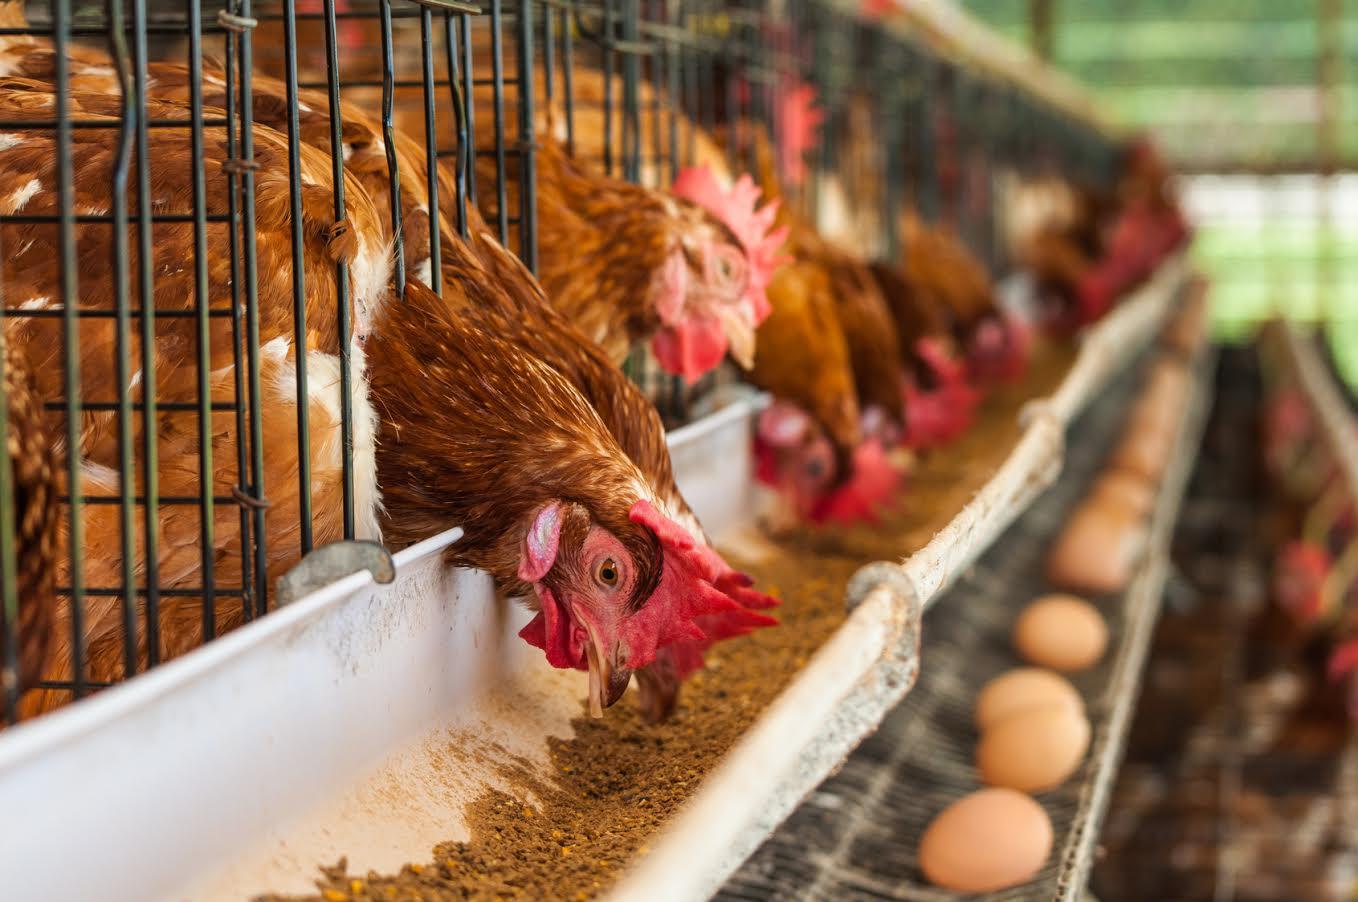 Кыргызстан ввёл запрет на ввоз мяса птицы и яиц из Казахстана